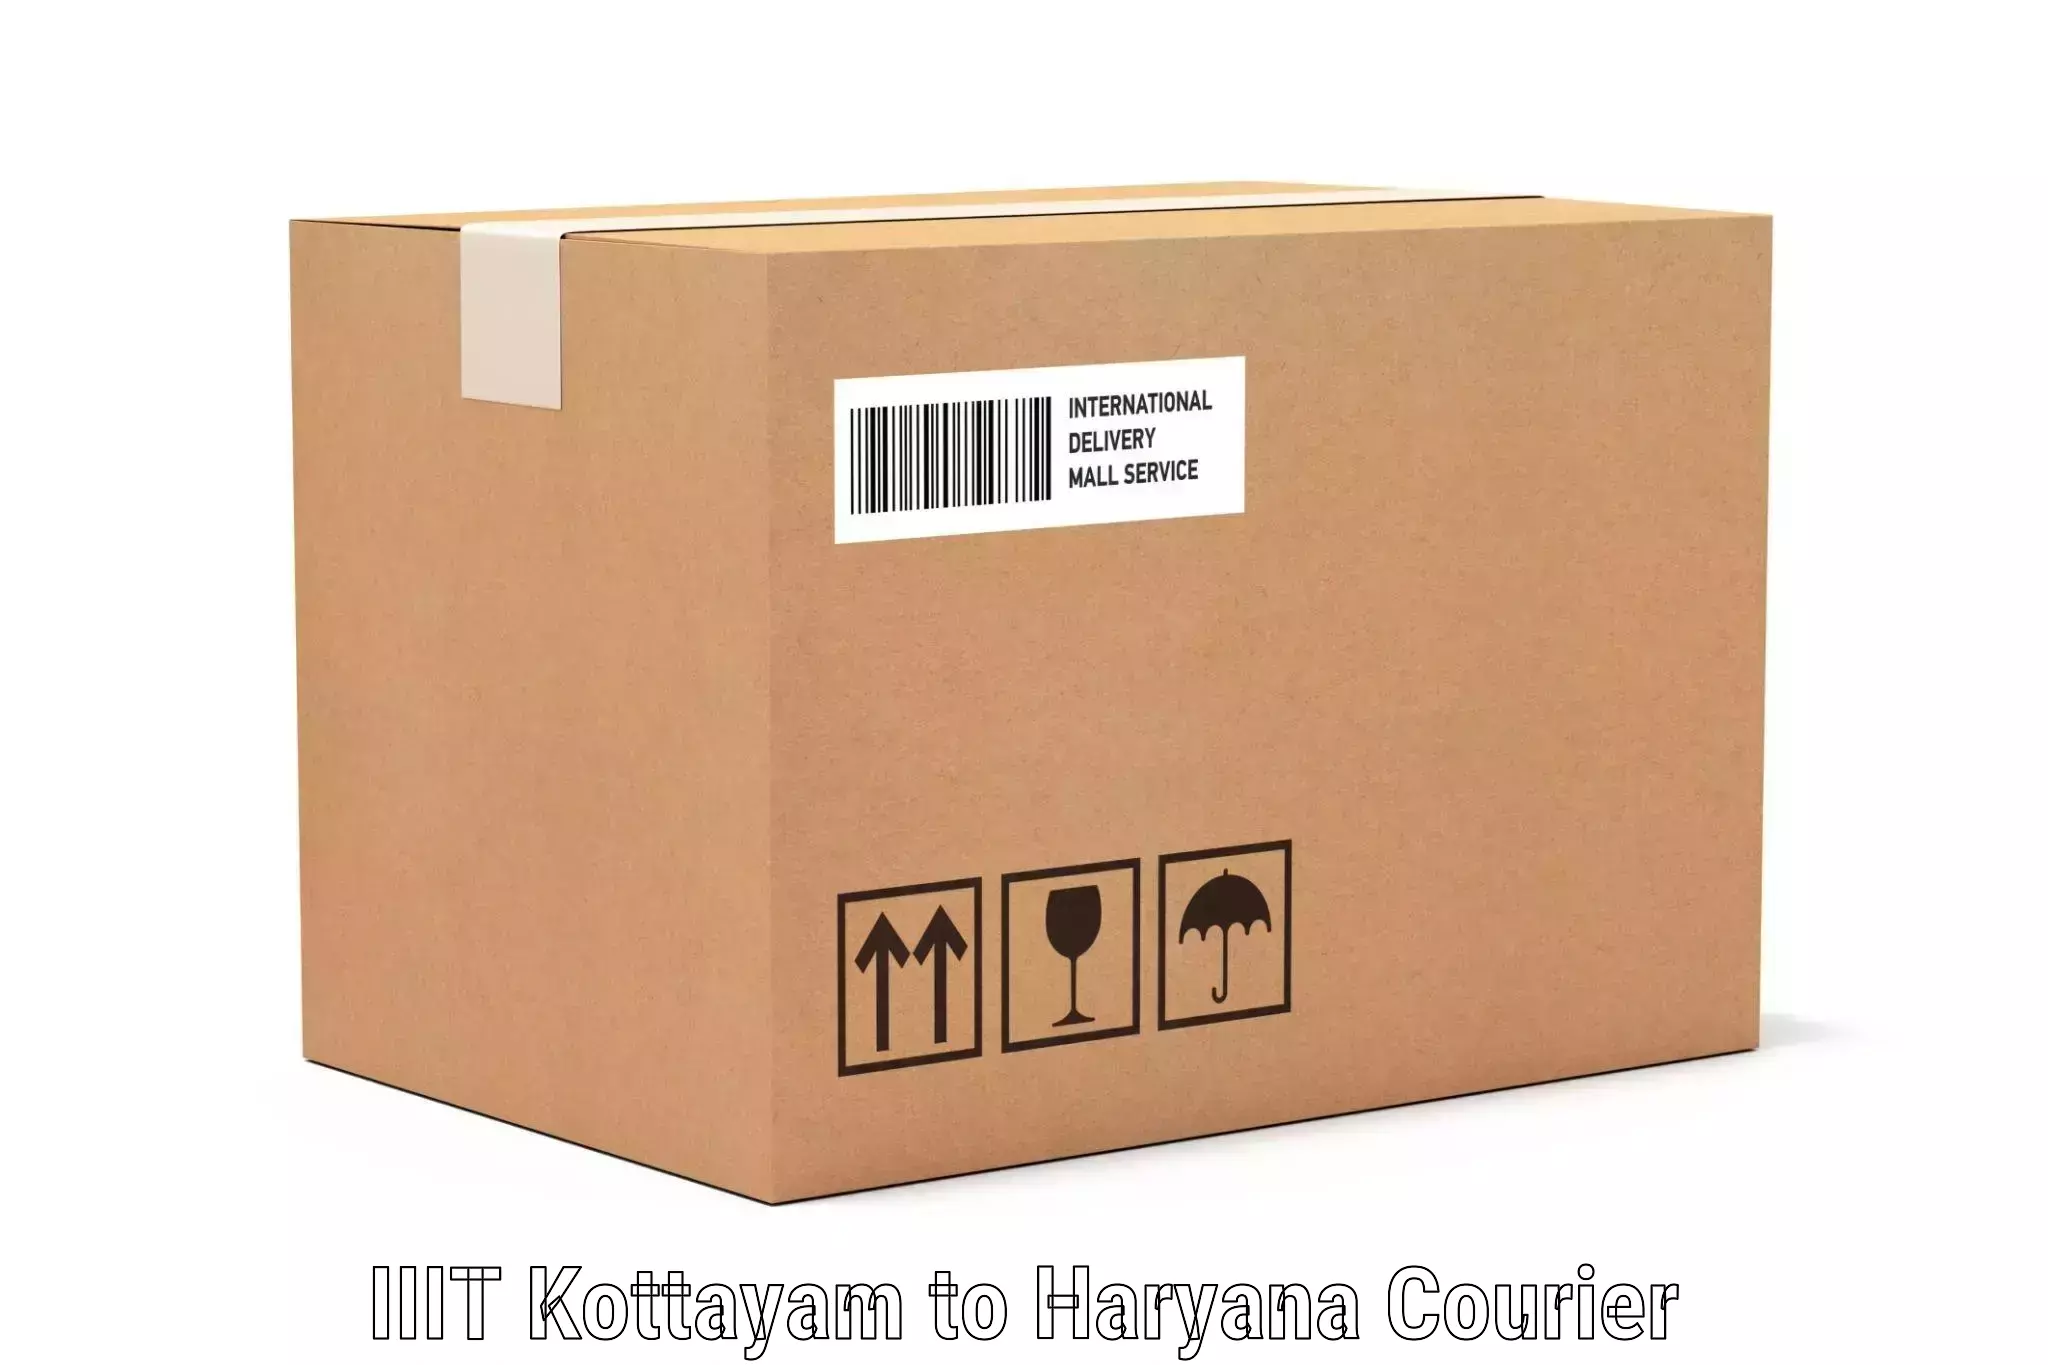 Luggage delivery app IIIT Kottayam to NCR Haryana